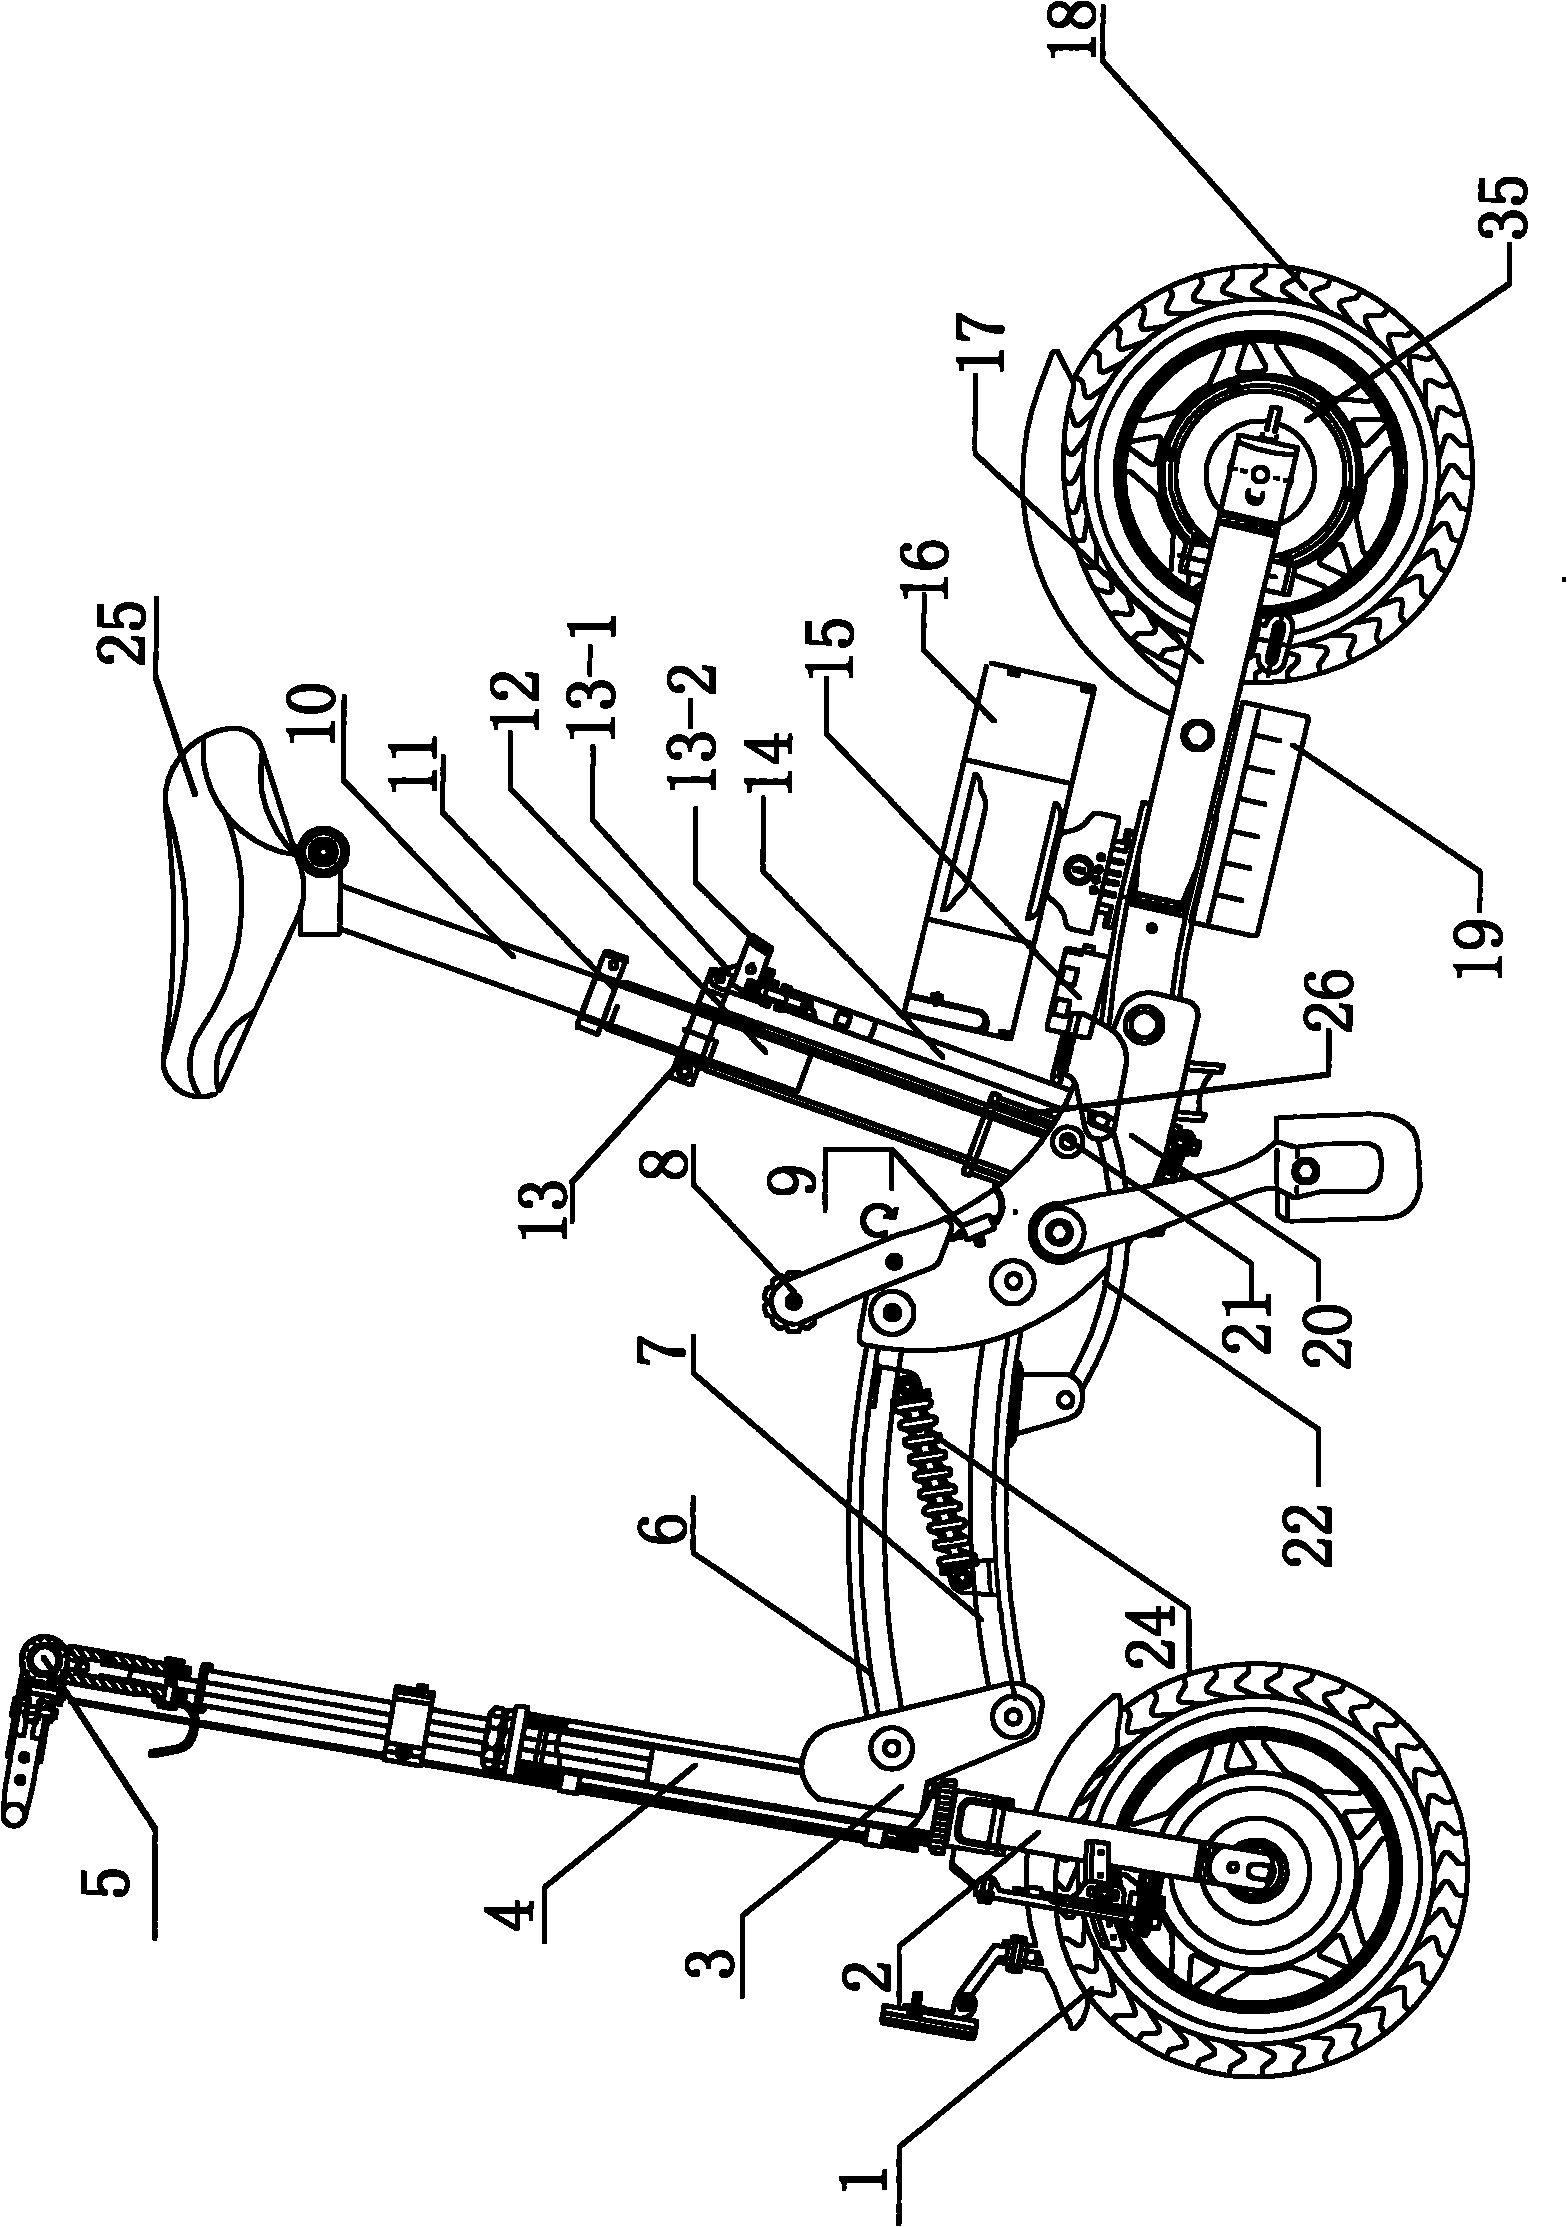 Semi-automatic folding moped